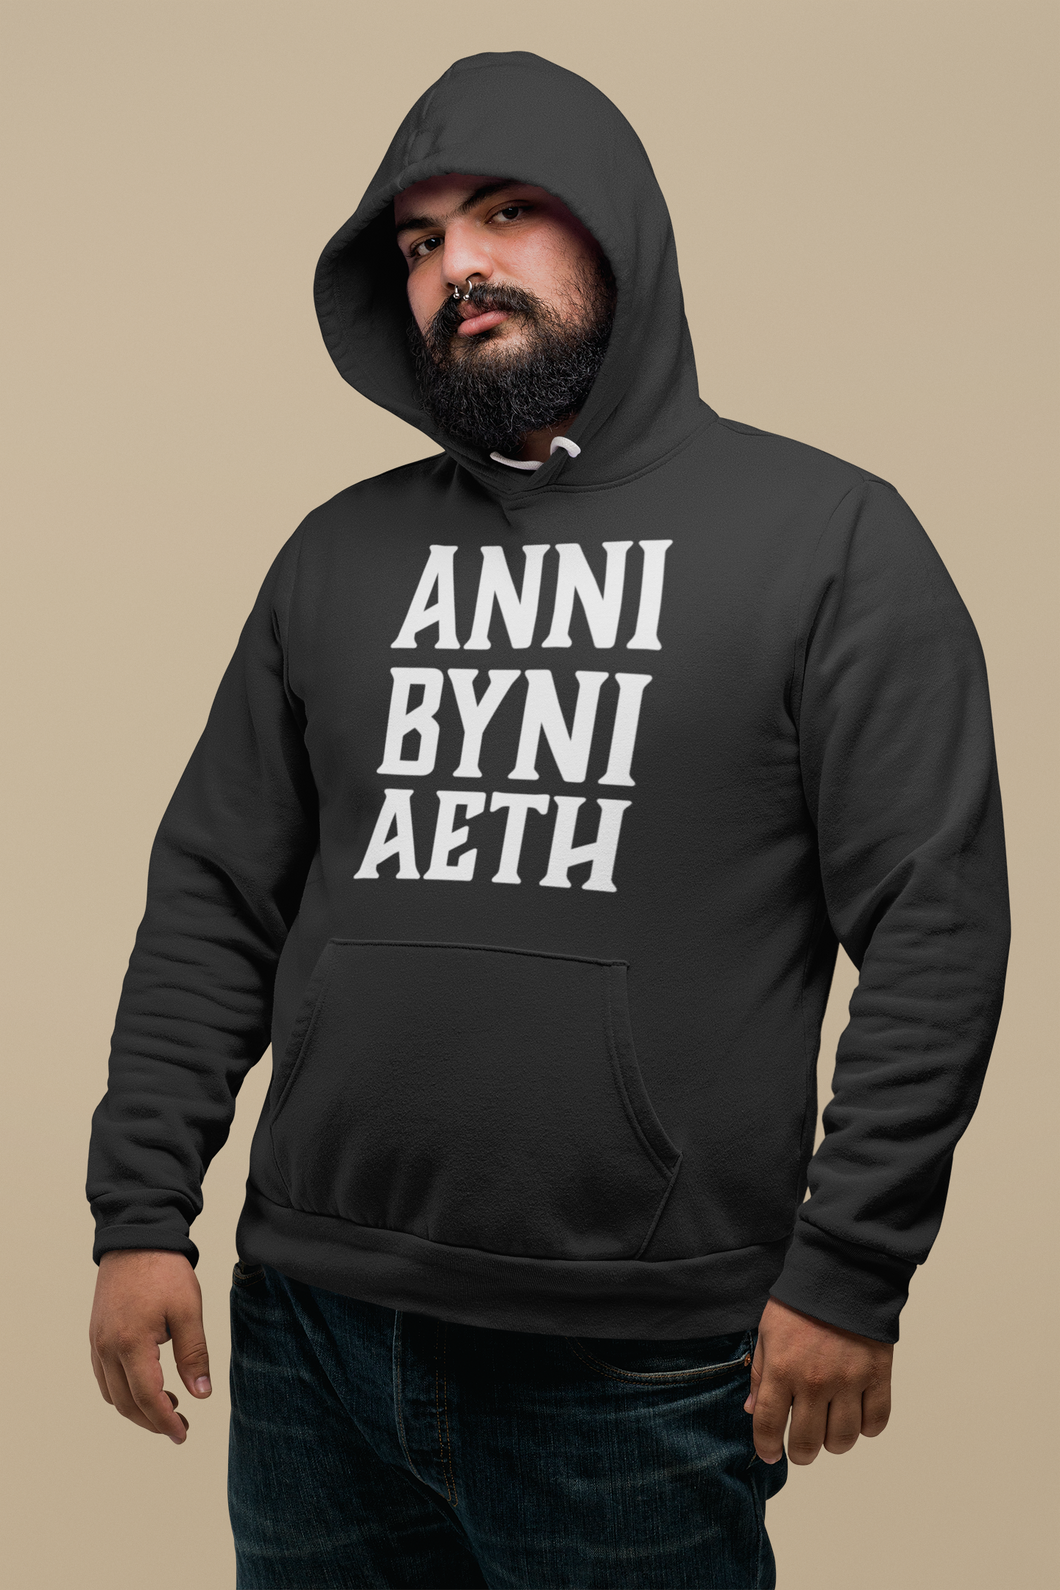 ANNI BYNI AETH - Hwdi